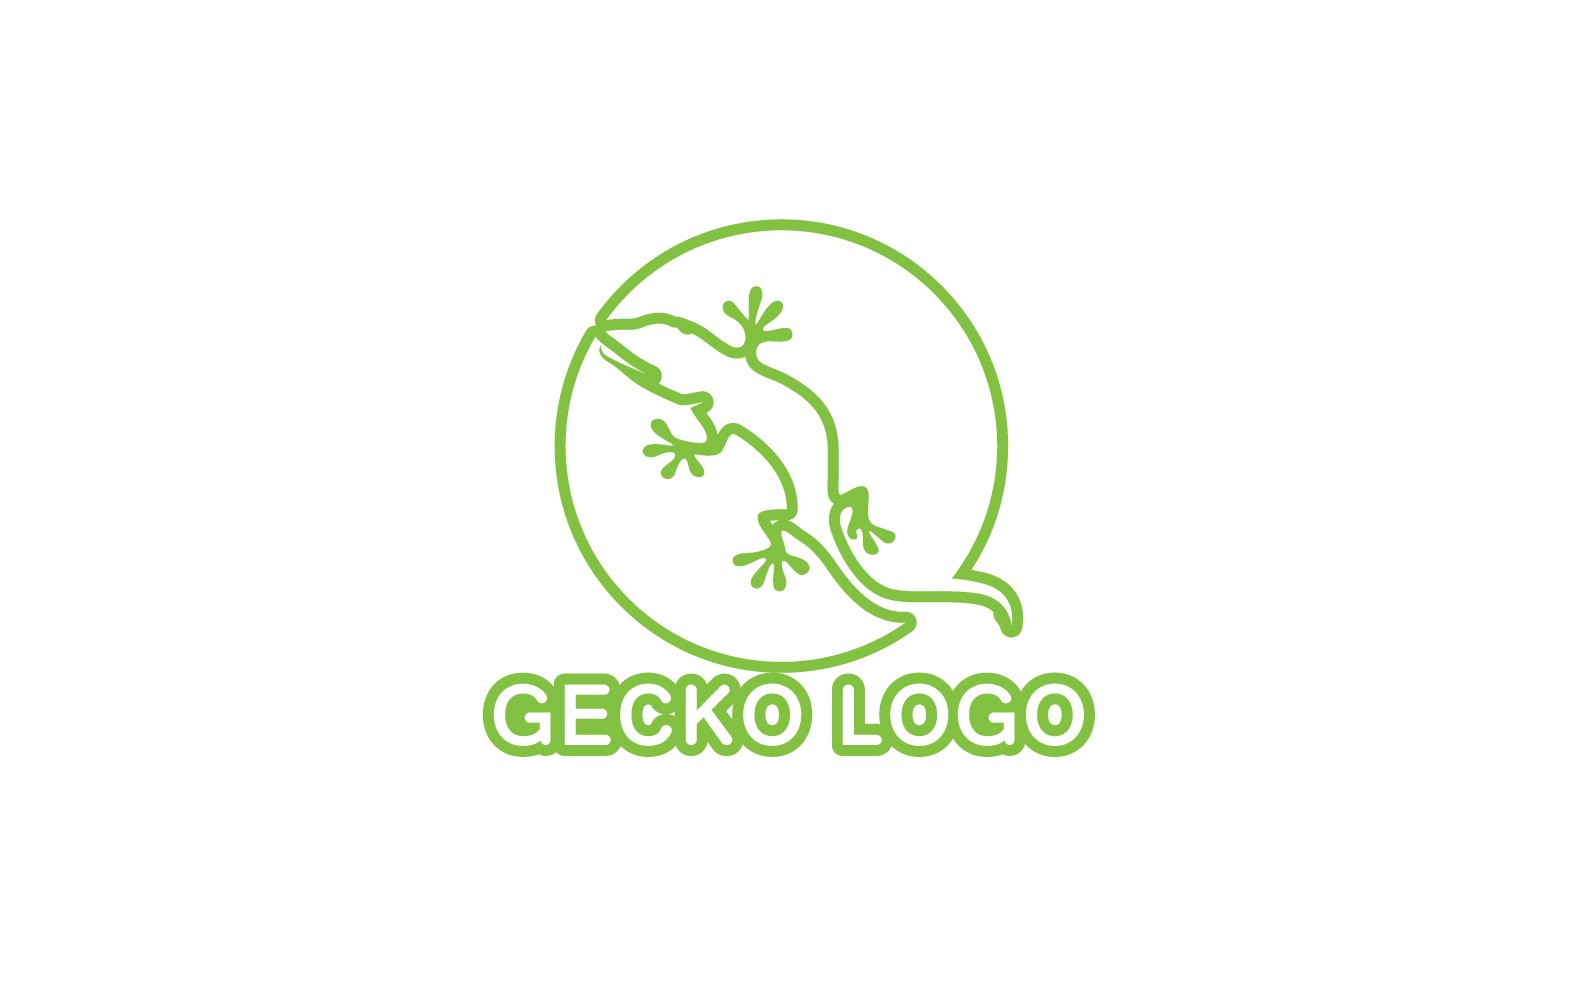 Kit Graphique #324514 Logo Gecko Divers Modles Web - Logo template Preview